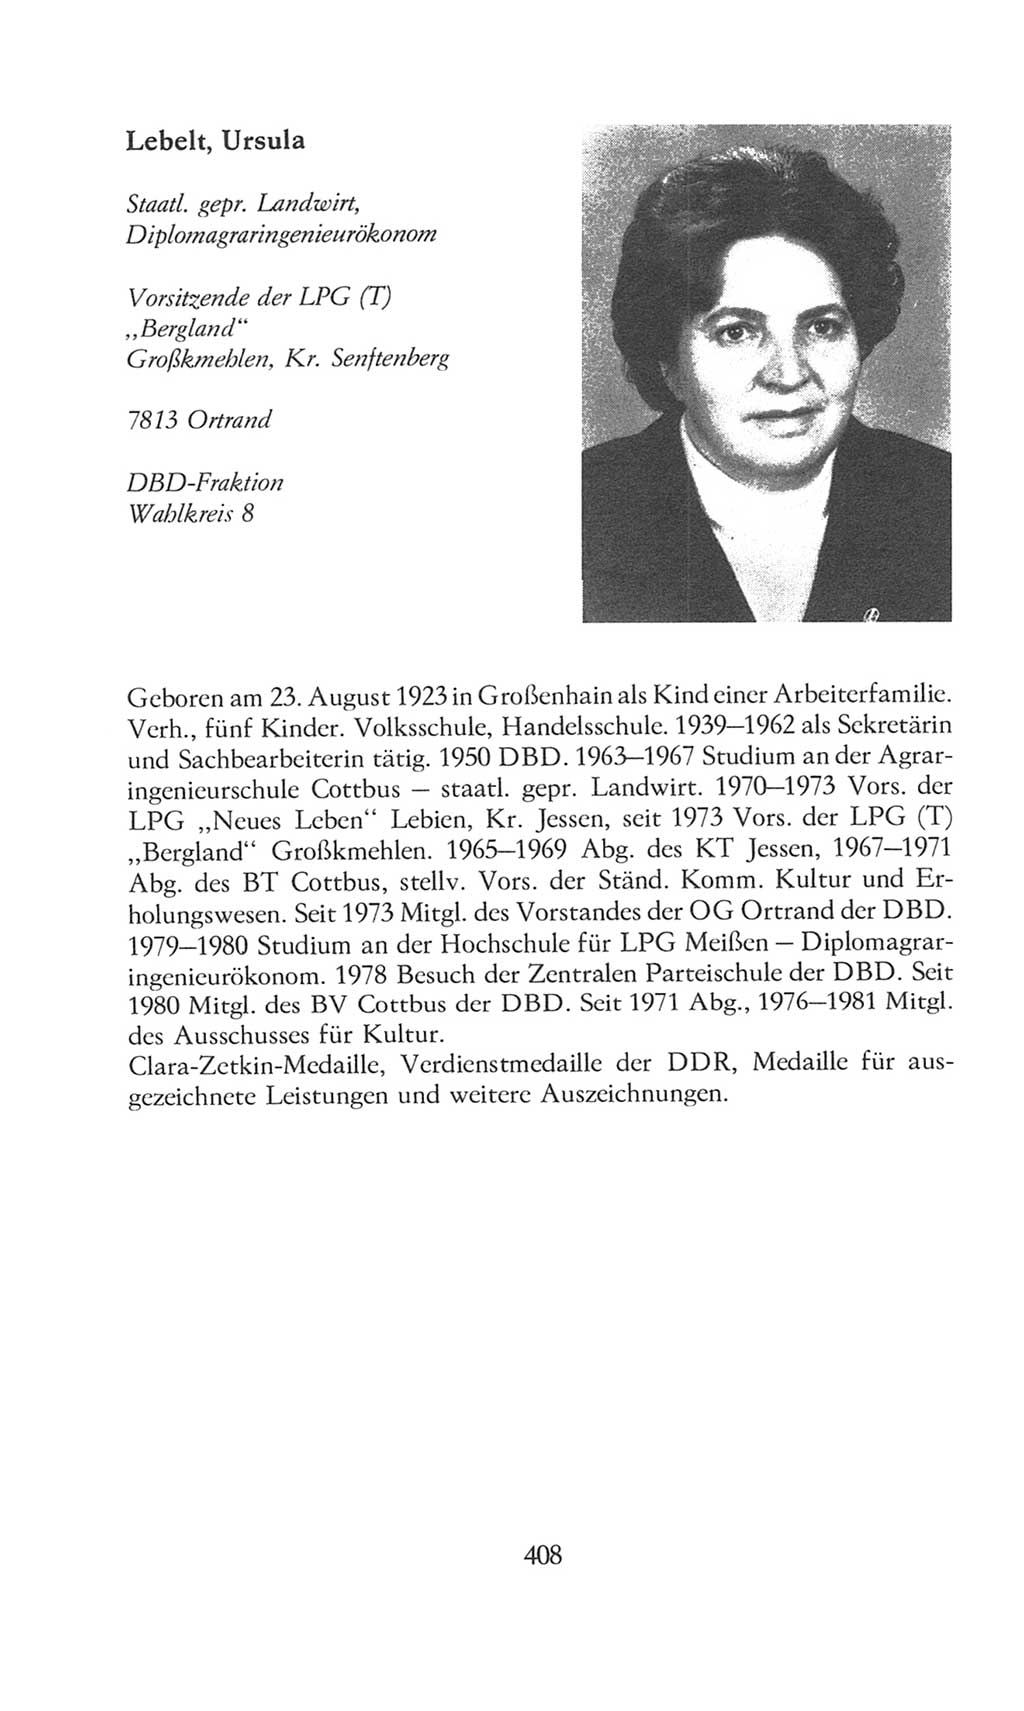 Volkskammer (VK) der Deutschen Demokratischen Republik (DDR), 8. Wahlperiode 1981-1986, Seite 408 (VK. DDR 8. WP. 1981-1986, S. 408)